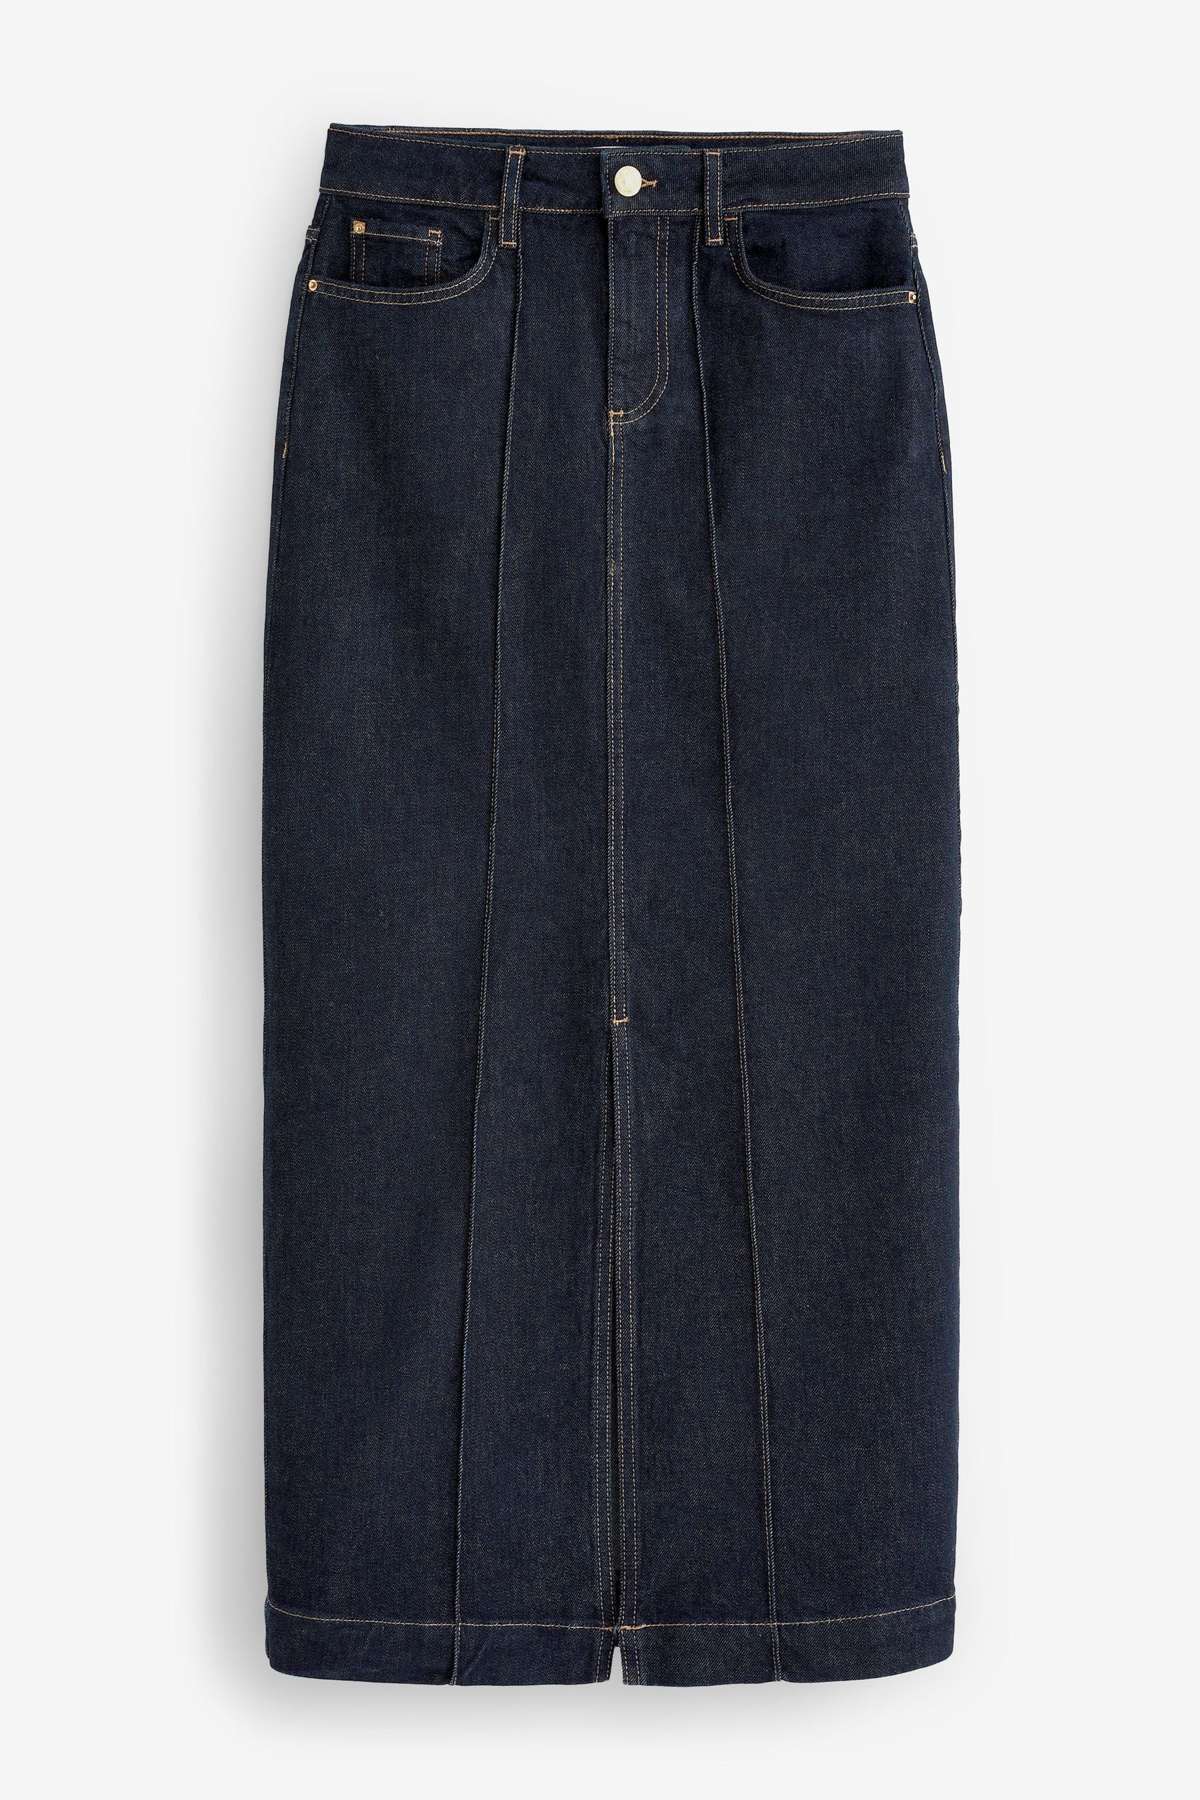 Джинсовая юбка джинсовая юбка макси премиум-класса (1 шт.)